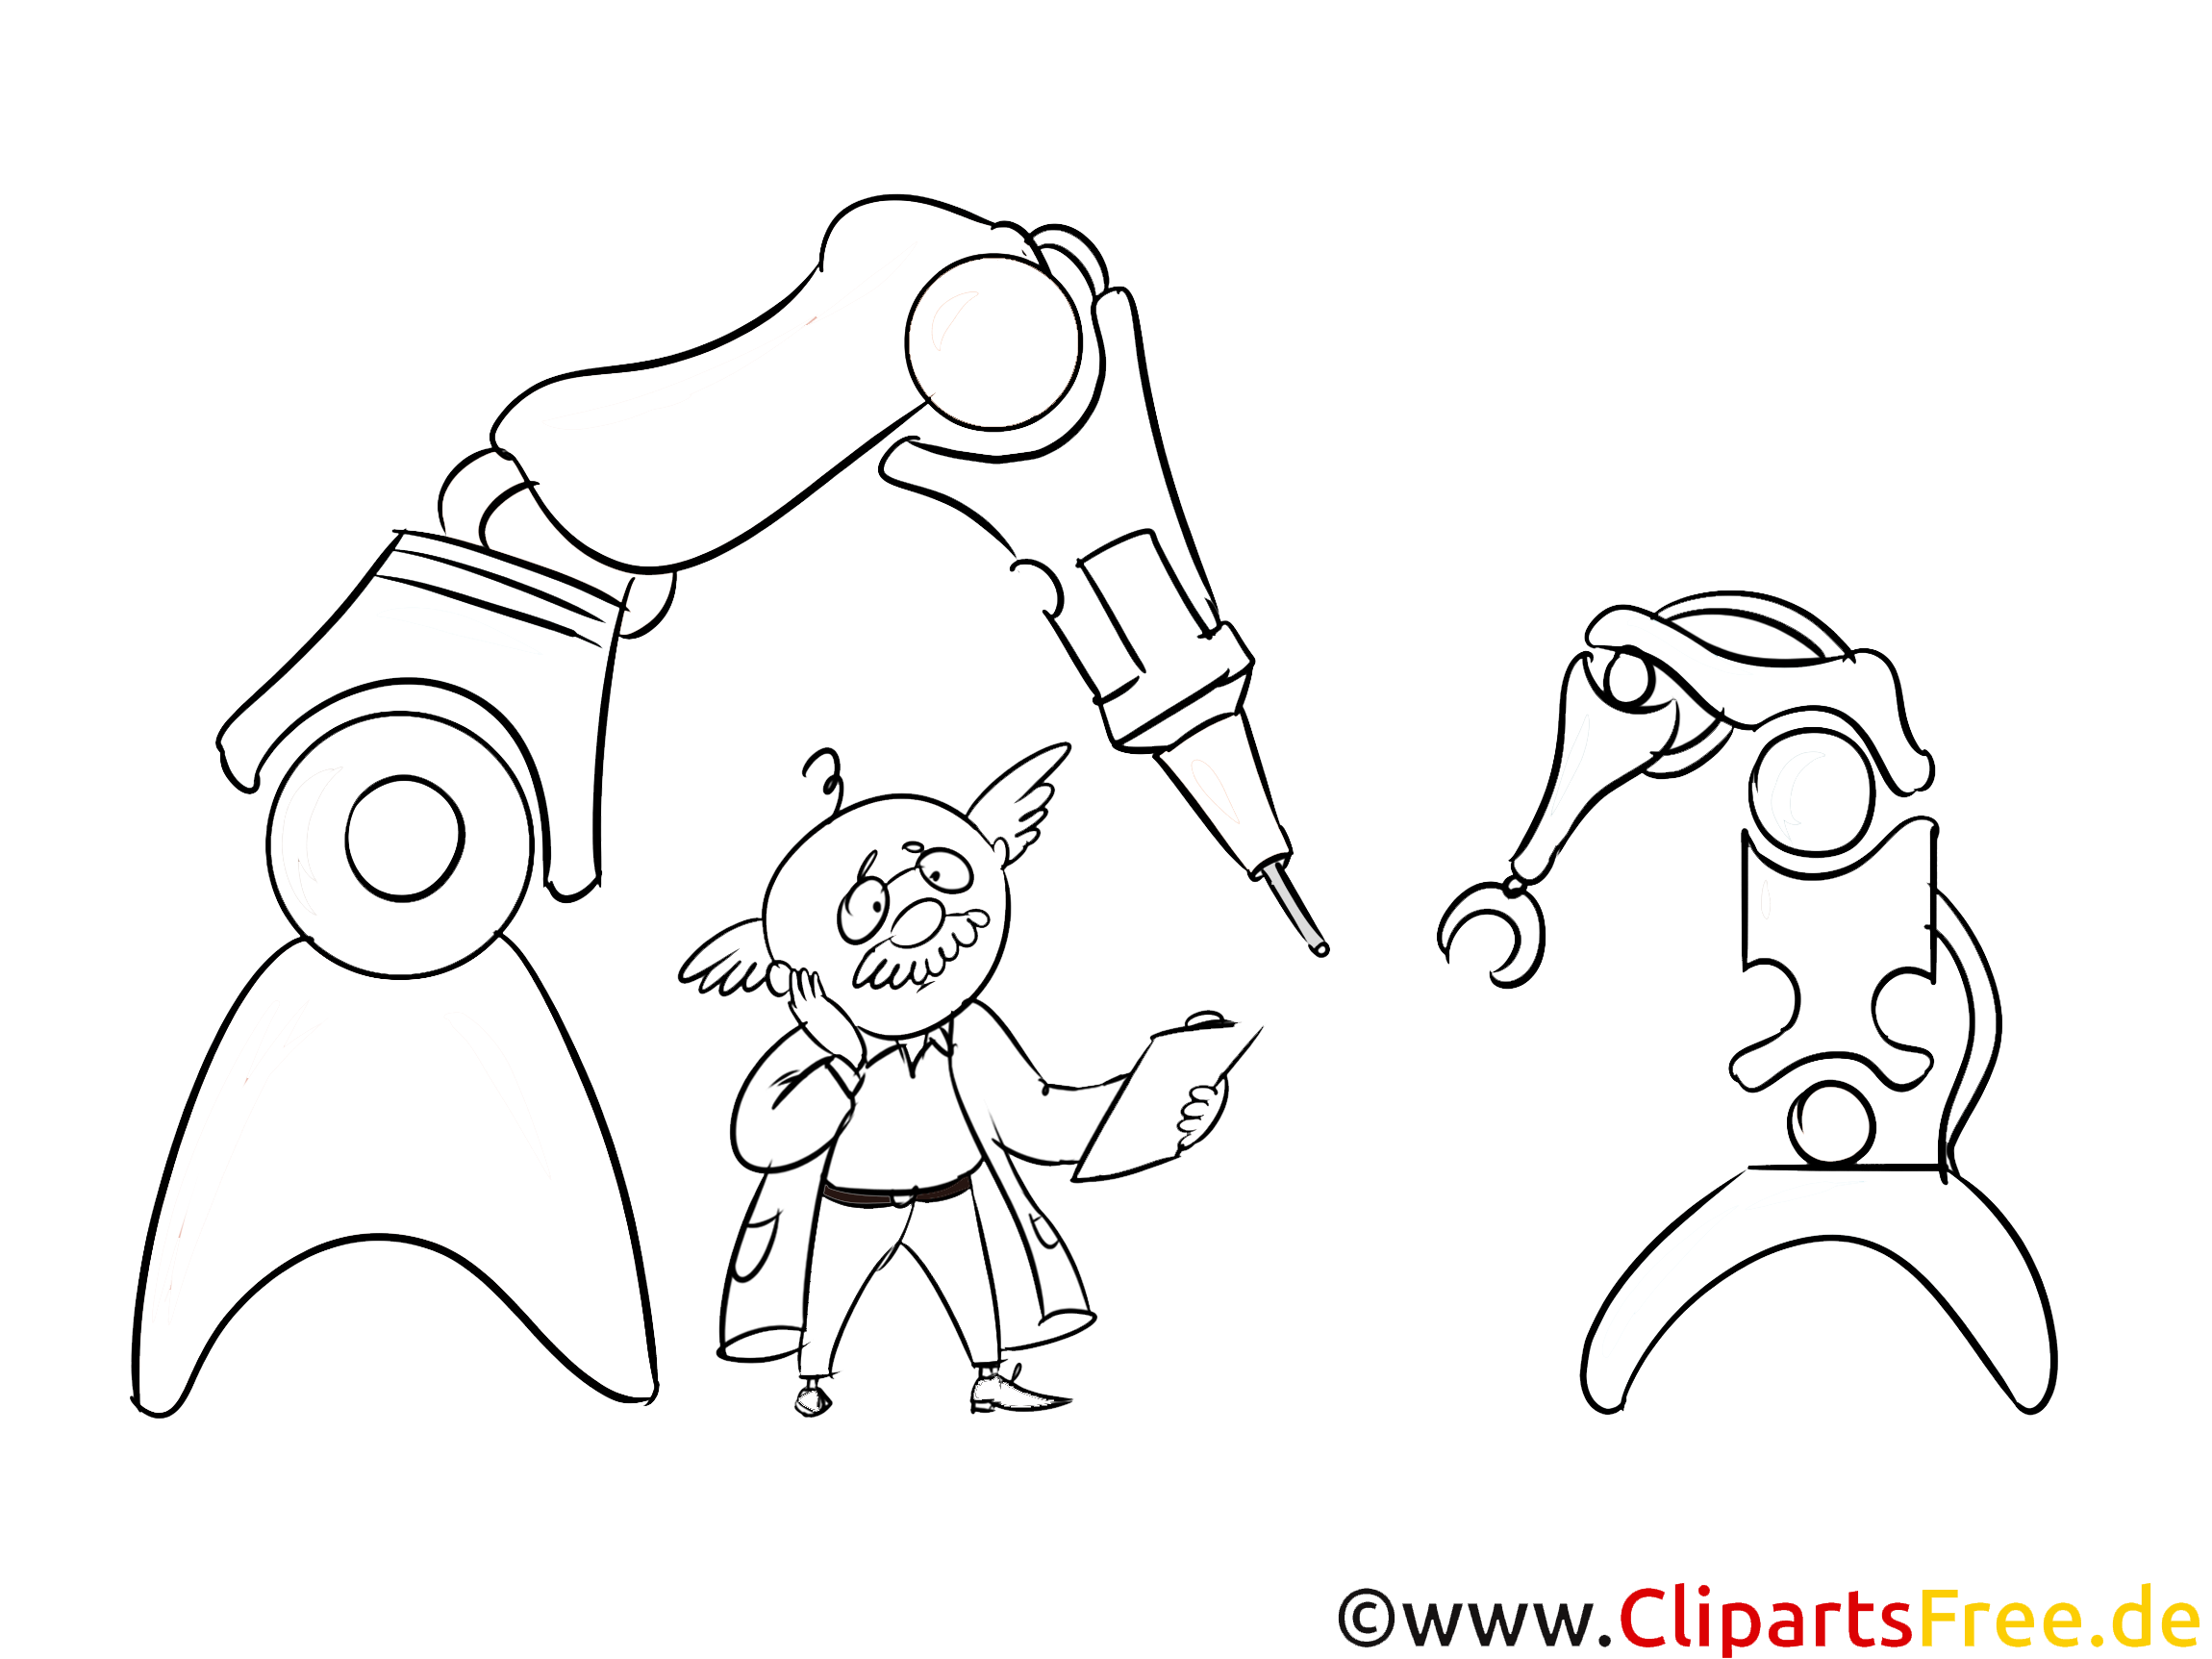 roboter in produktion bild illustration clipart schwarz